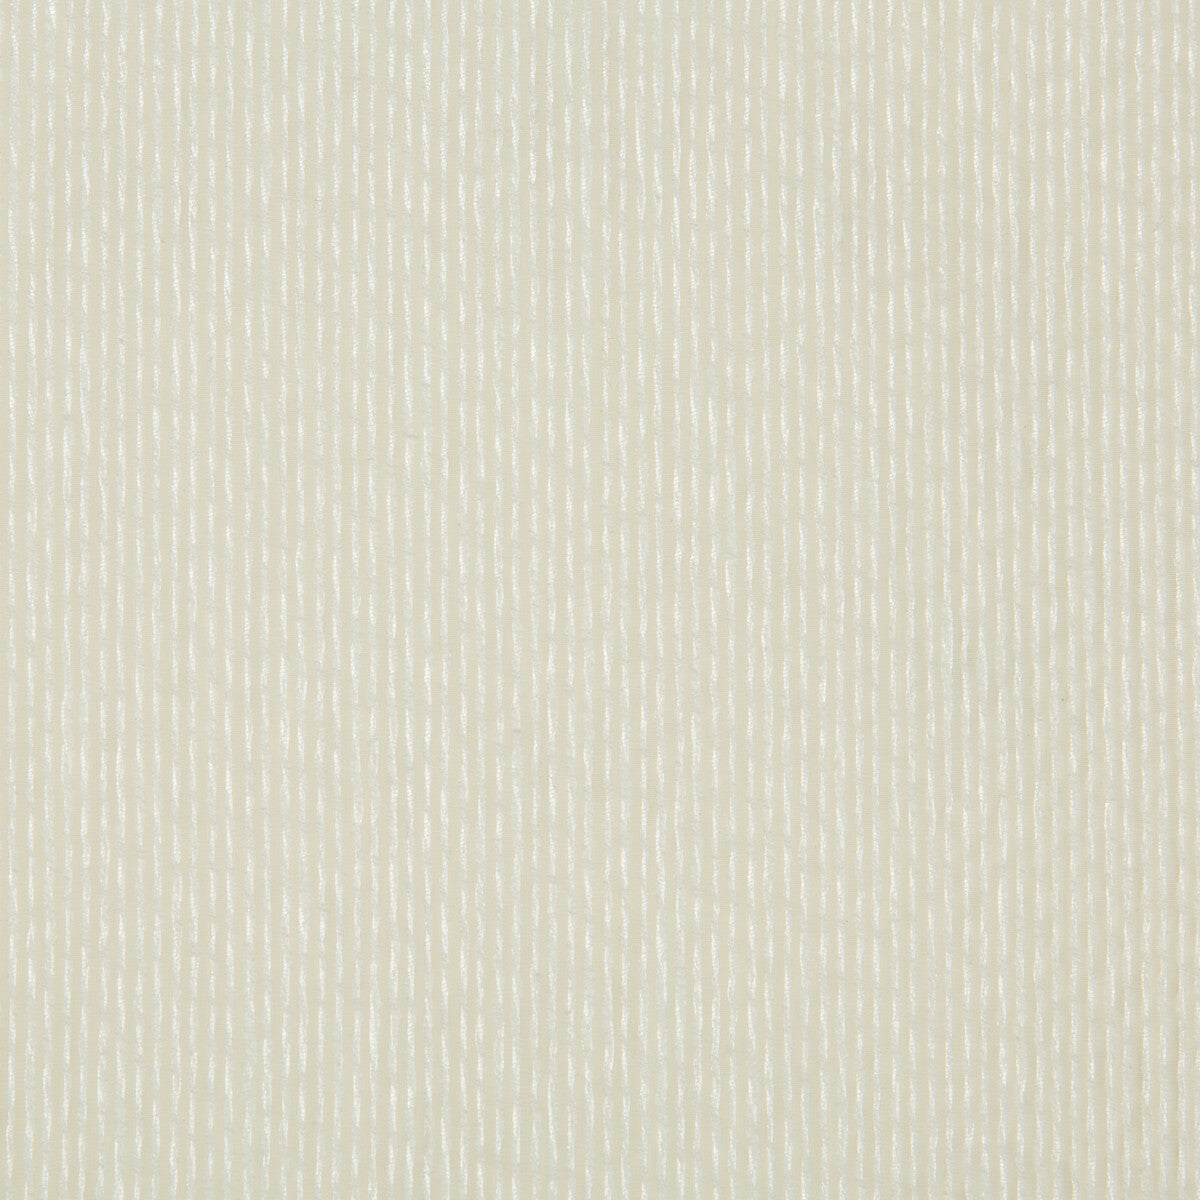 Kravet Basics fabric in 4435-101 color - pattern 4435.101.0 - by Kravet Basics